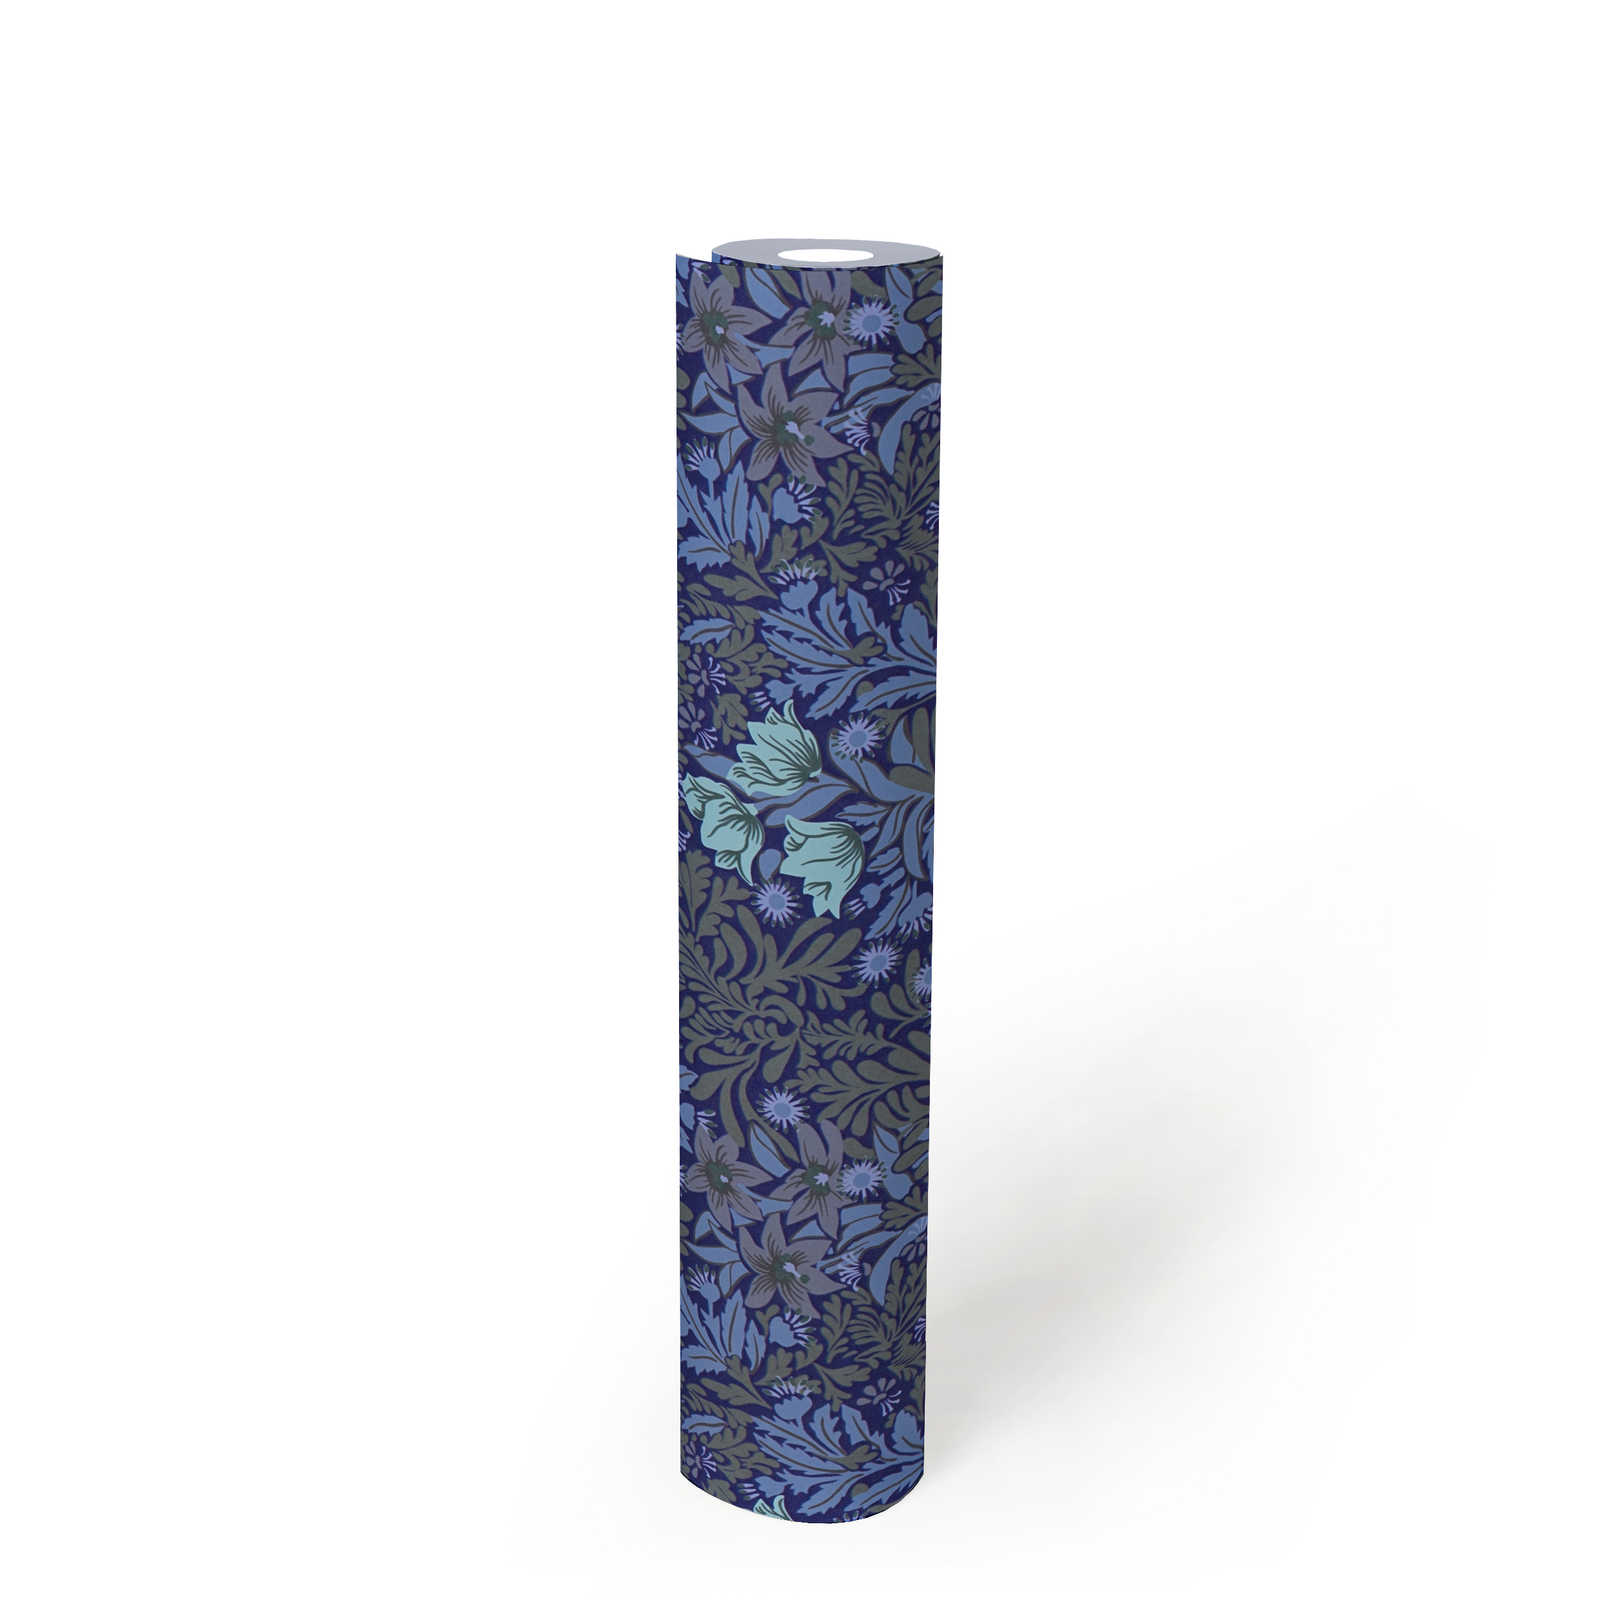             Floral Vliestapete mit Blätterranken und Blüten – Blau, Grau, Grün
        